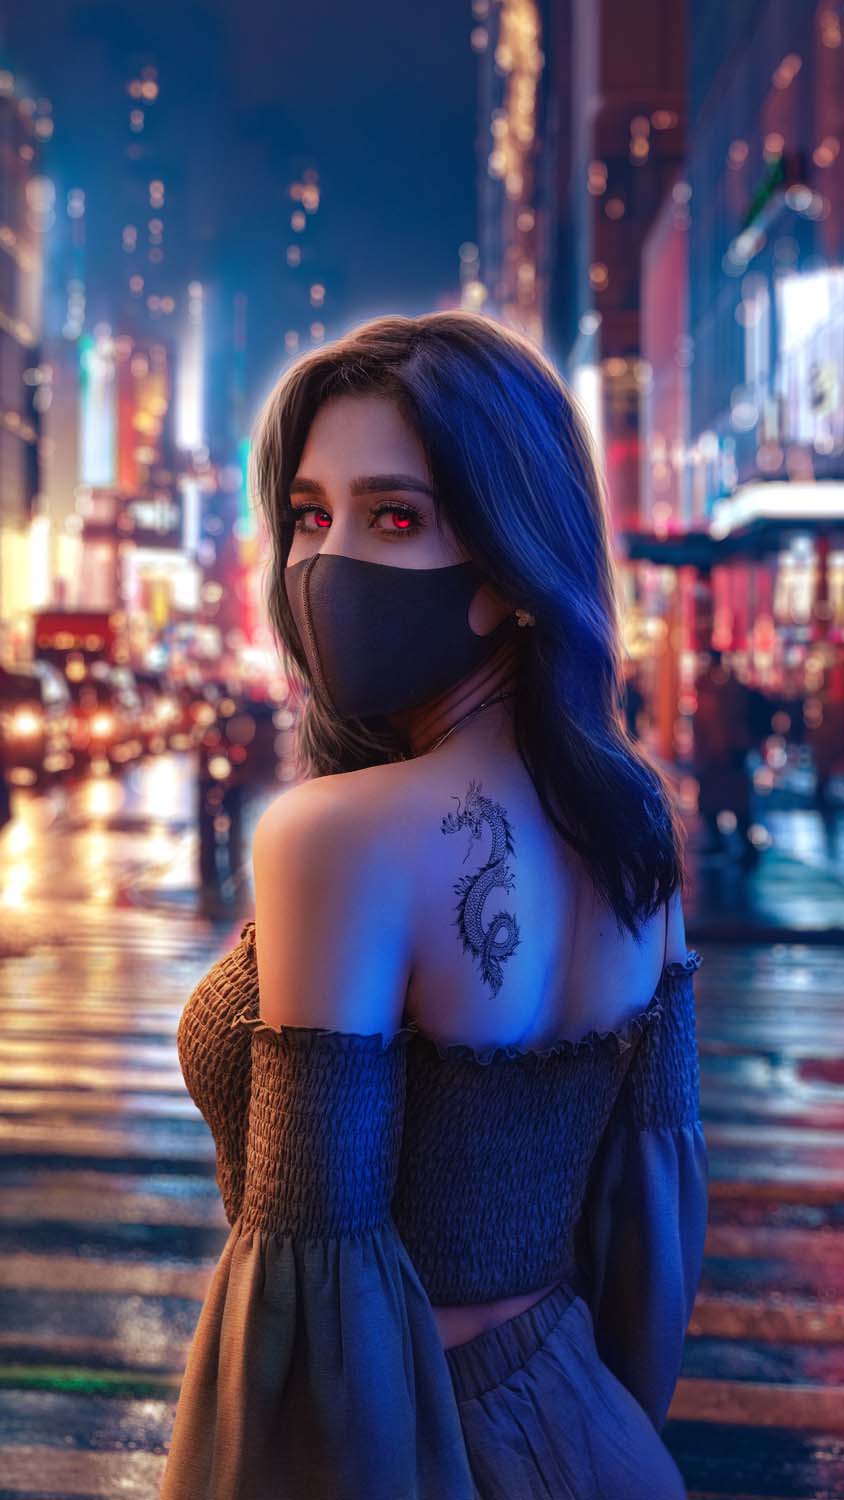 Dragon Tattoo Girl iPhone Wallpaper HD